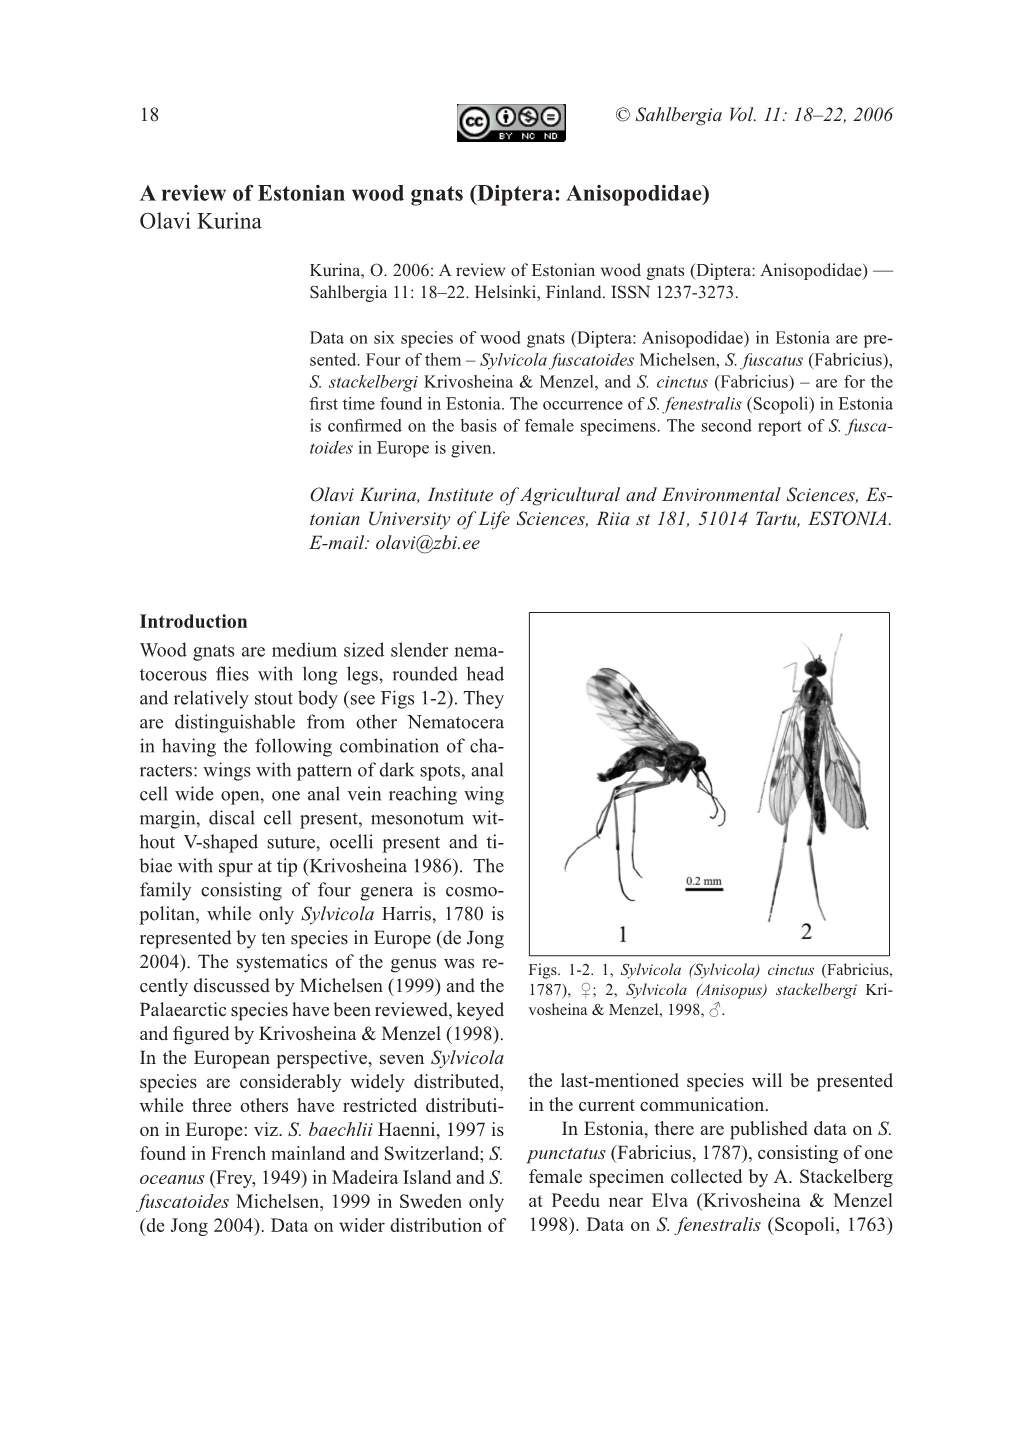 Diptera: Anisopodidae) Olavi Kurina